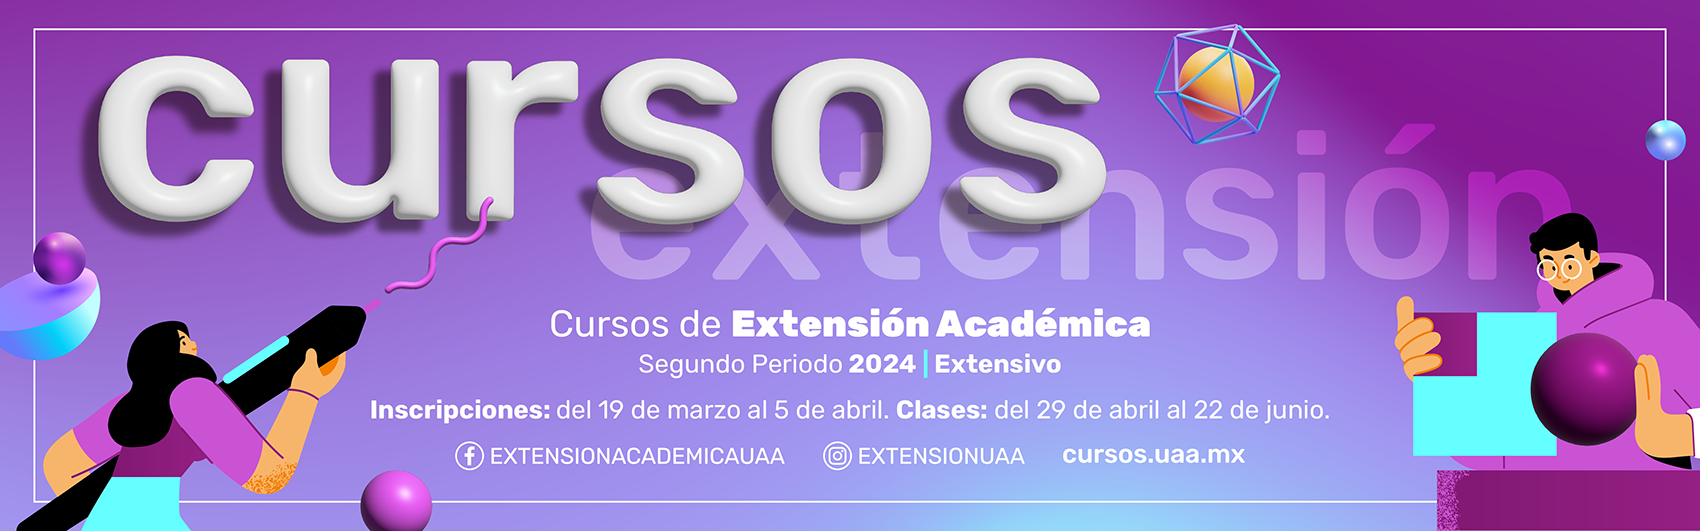 Banner cursos de extension